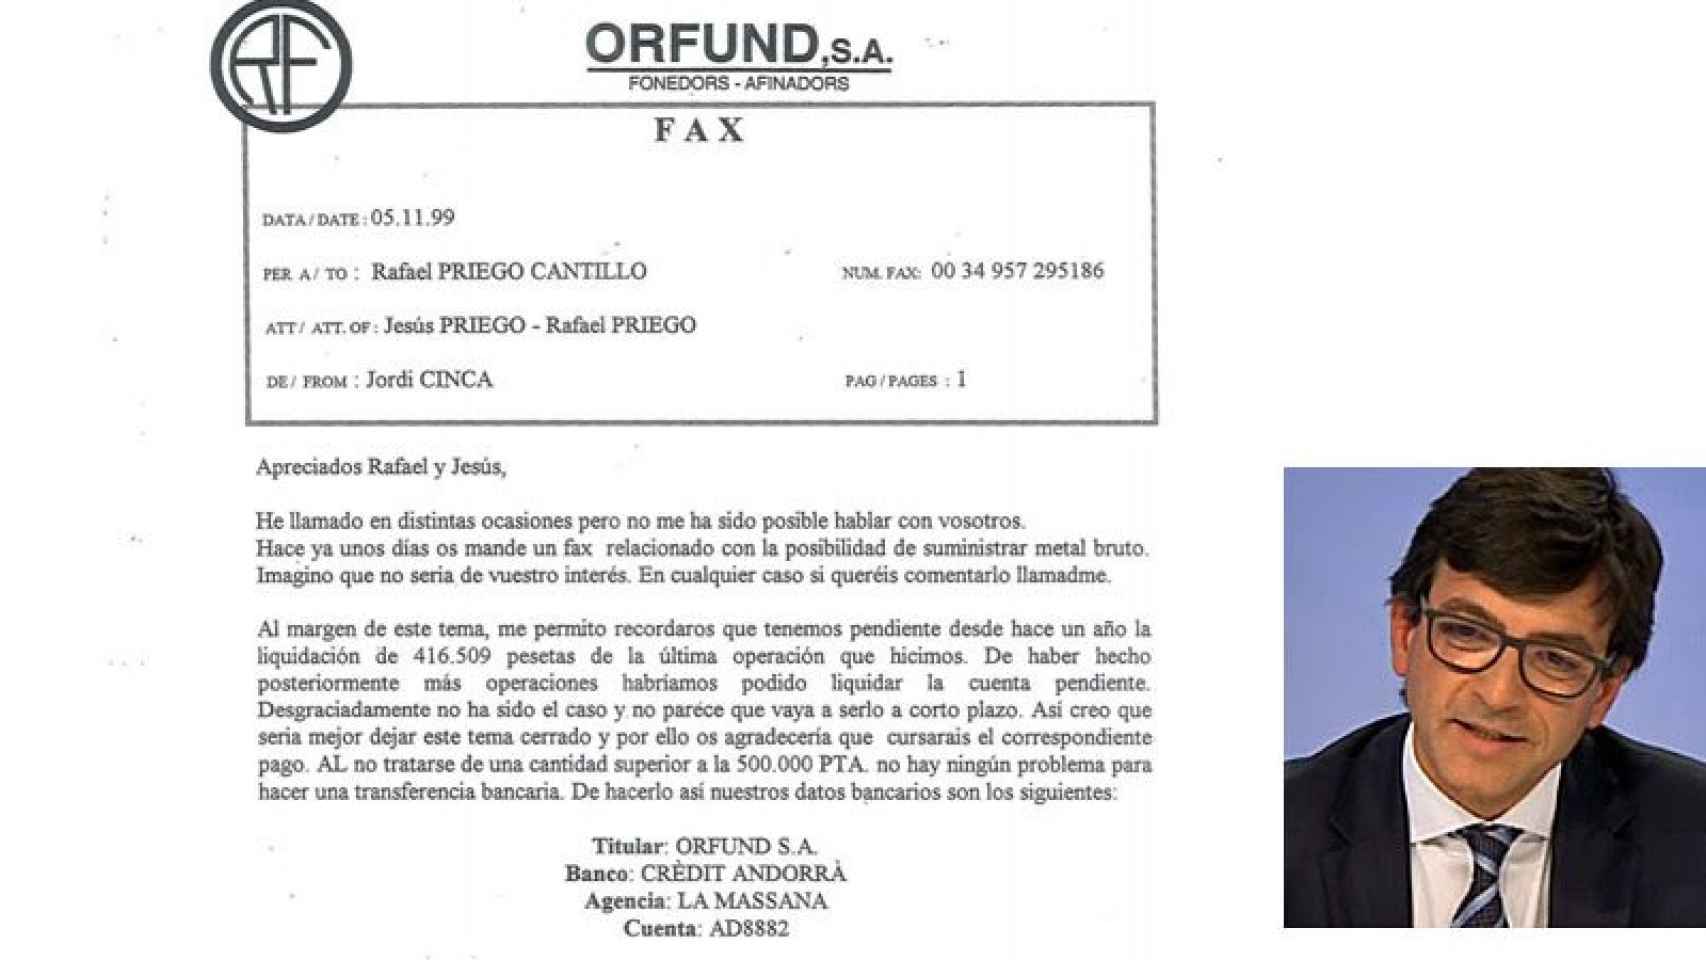 Fax enviado por Jordi Cinca (en la imagen de la derecha) al joyero Rafael Priego en 1999 reclamándole un pago de 416.509 pesetas.